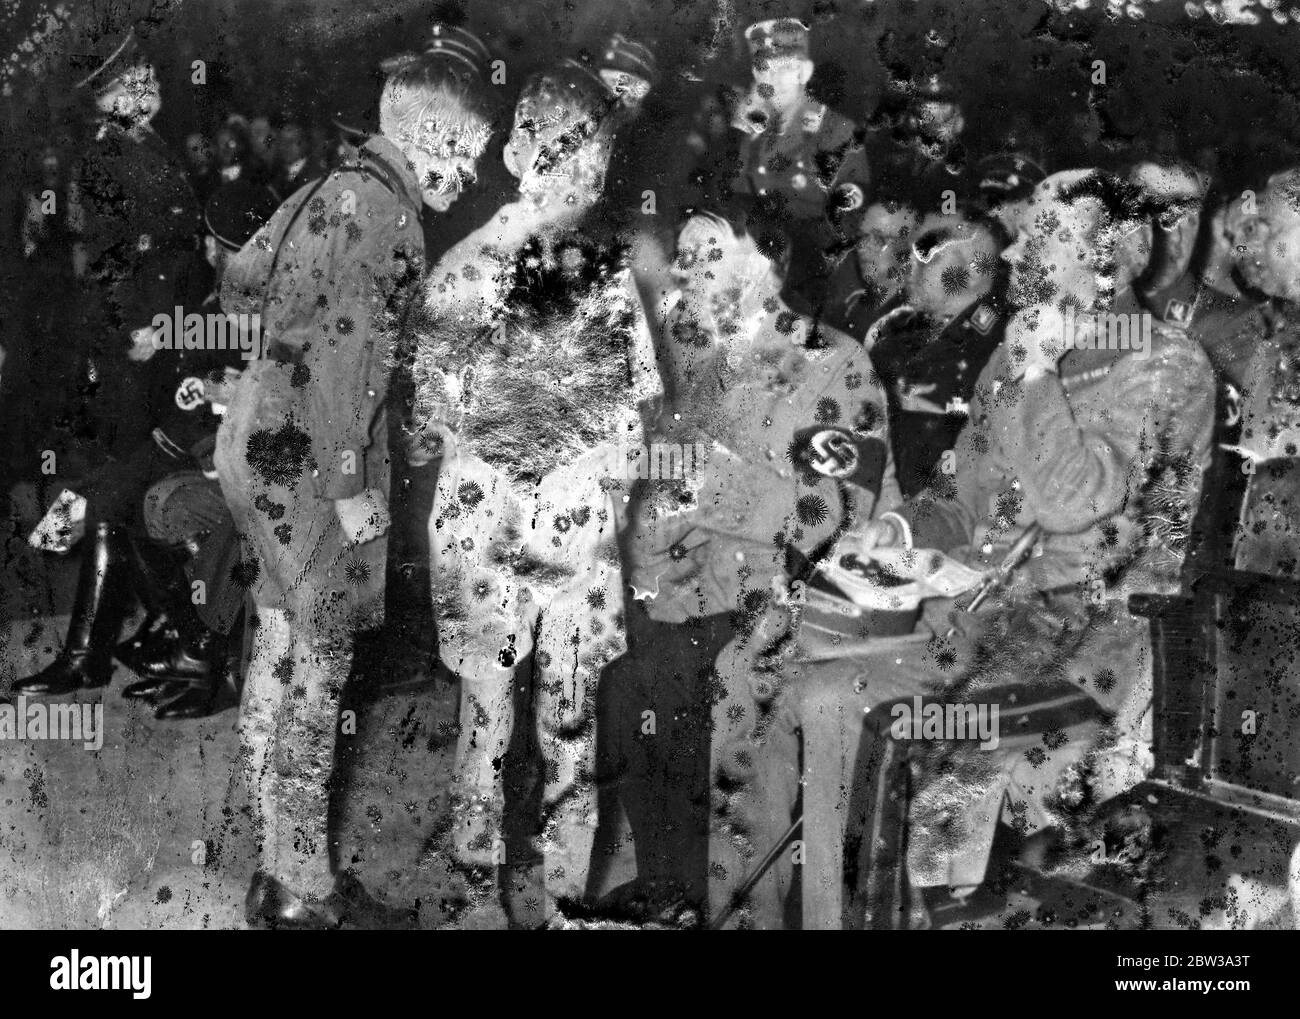 Kanzler Hitler als Freund der Kinder. Bundeskanzler Hitler im freundschaftlichen Gespräch mit Jungen der nationalsozialistischen Jugendorganisation, als er das Konzert der kombinierten Sturmtrupp-Bands im Sportpalast Berlin besuchte. 19. April 1934 Stockfoto